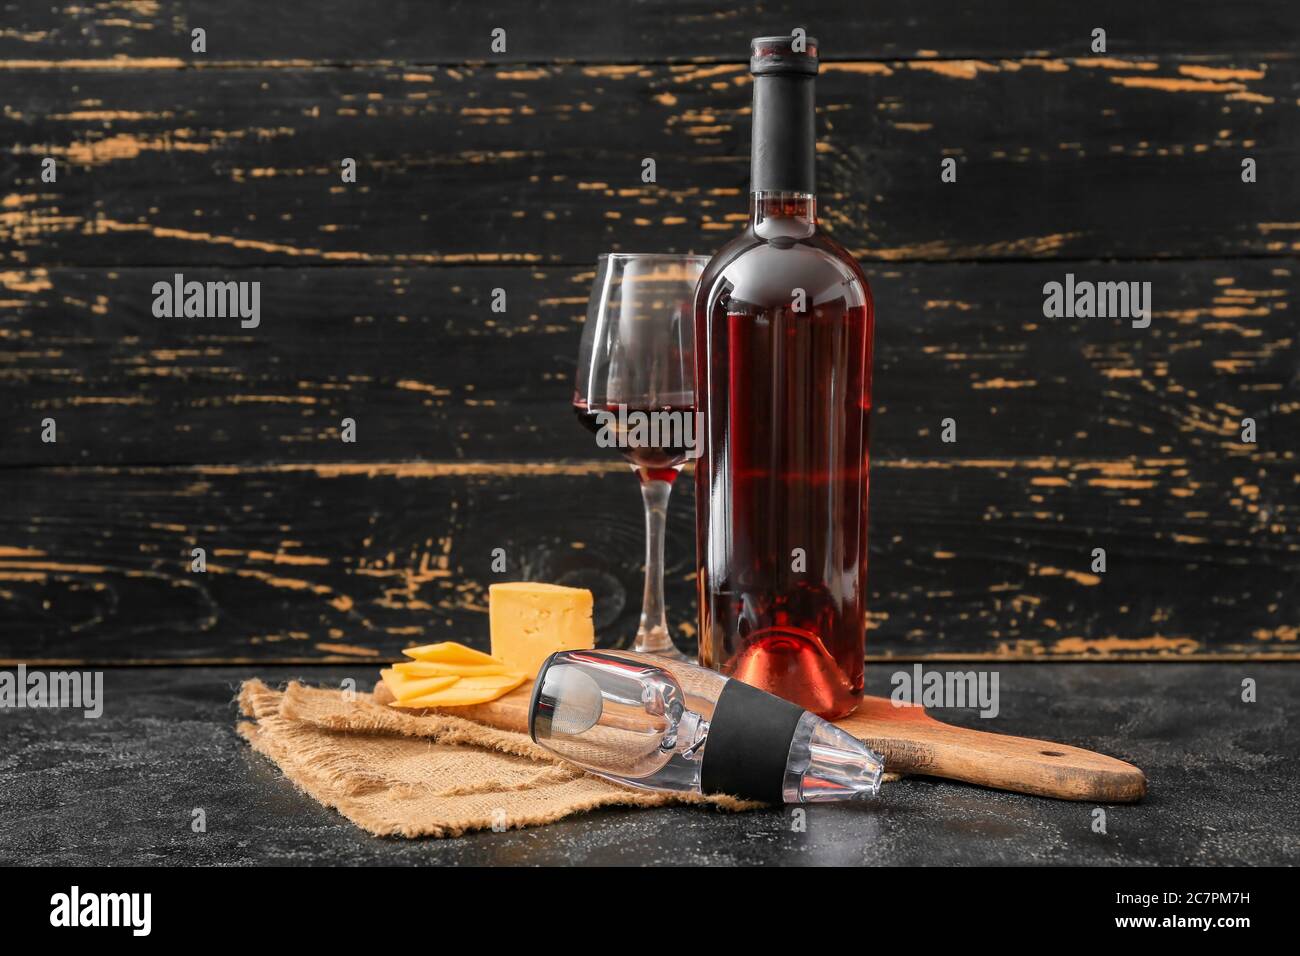 Aeratore con bicchiere, bottiglia di vino e formaggio su fondo scuro Foto  stock - Alamy